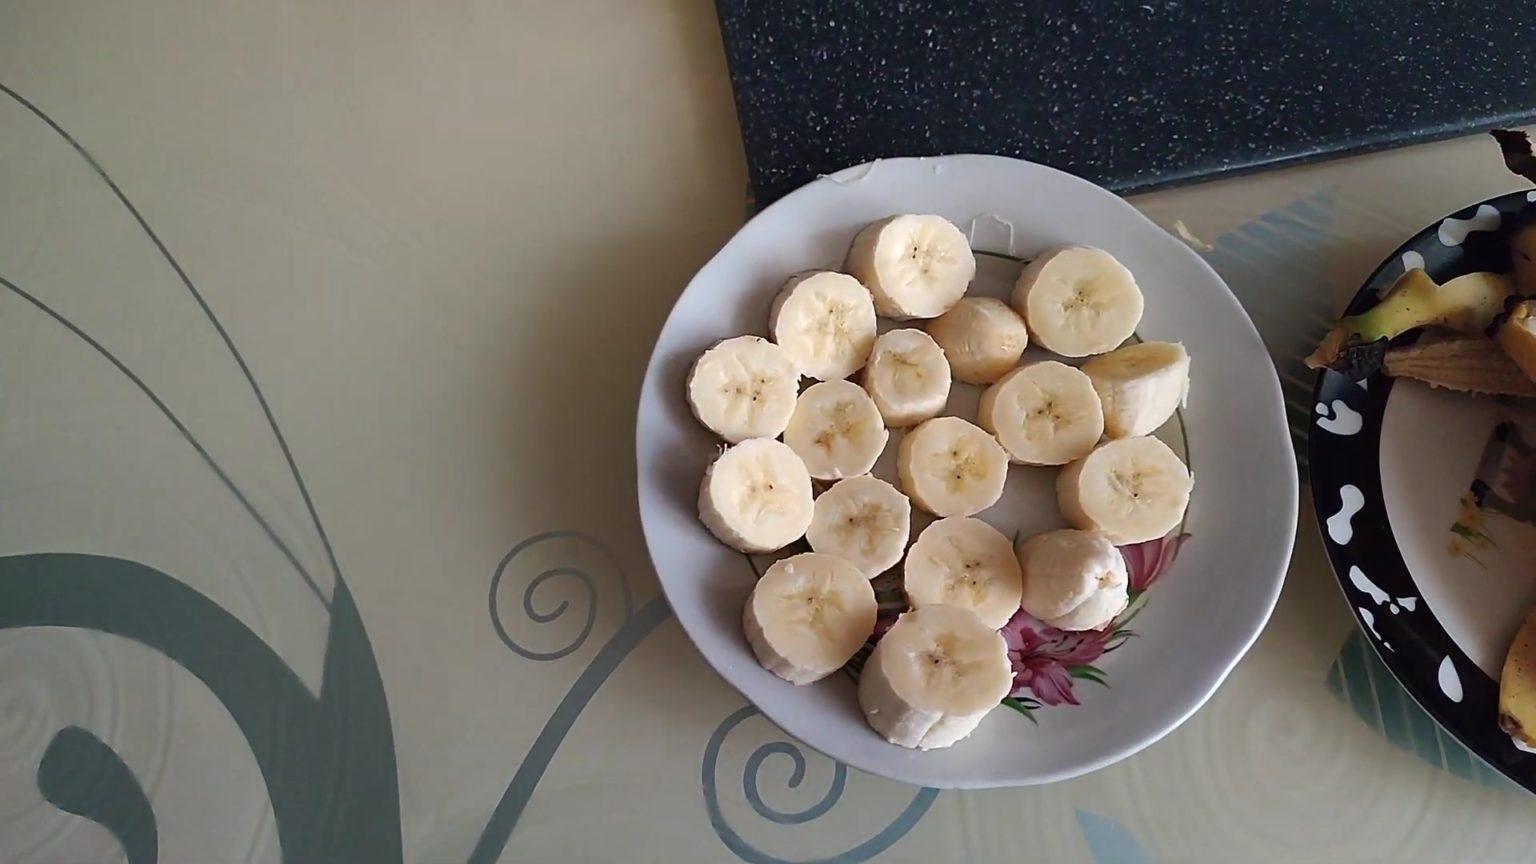 Почистить и нарезать бананы на кусочки среднего размера. Положить в морозилку для заморозки на 3–4 часа.